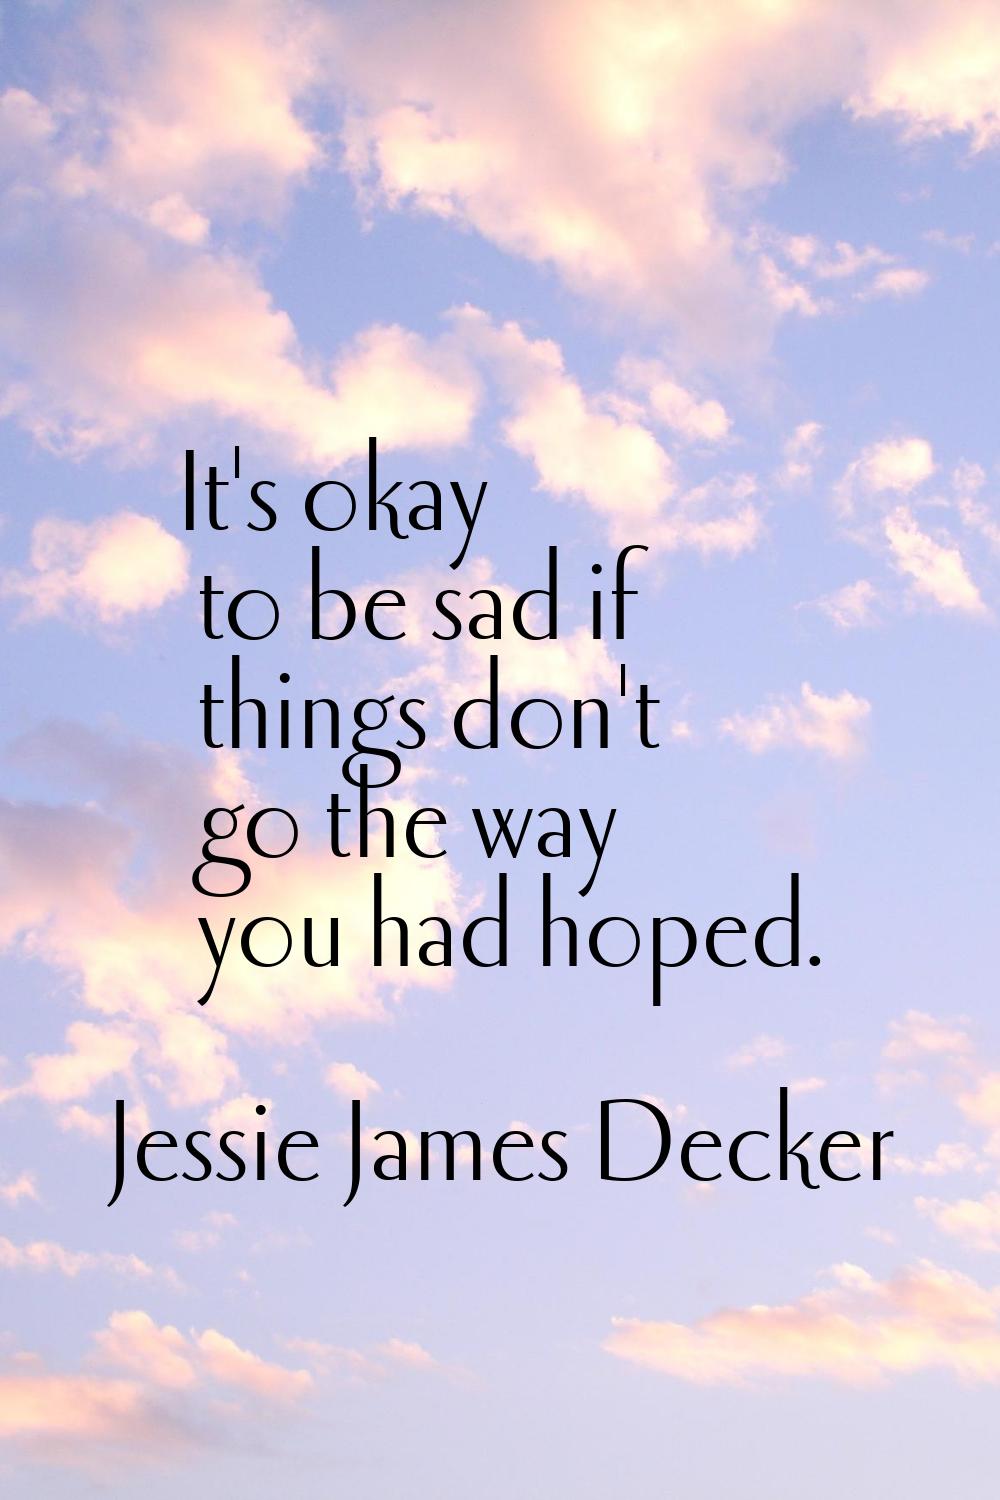 It's okay to be sad if things don't go the way you had hoped.